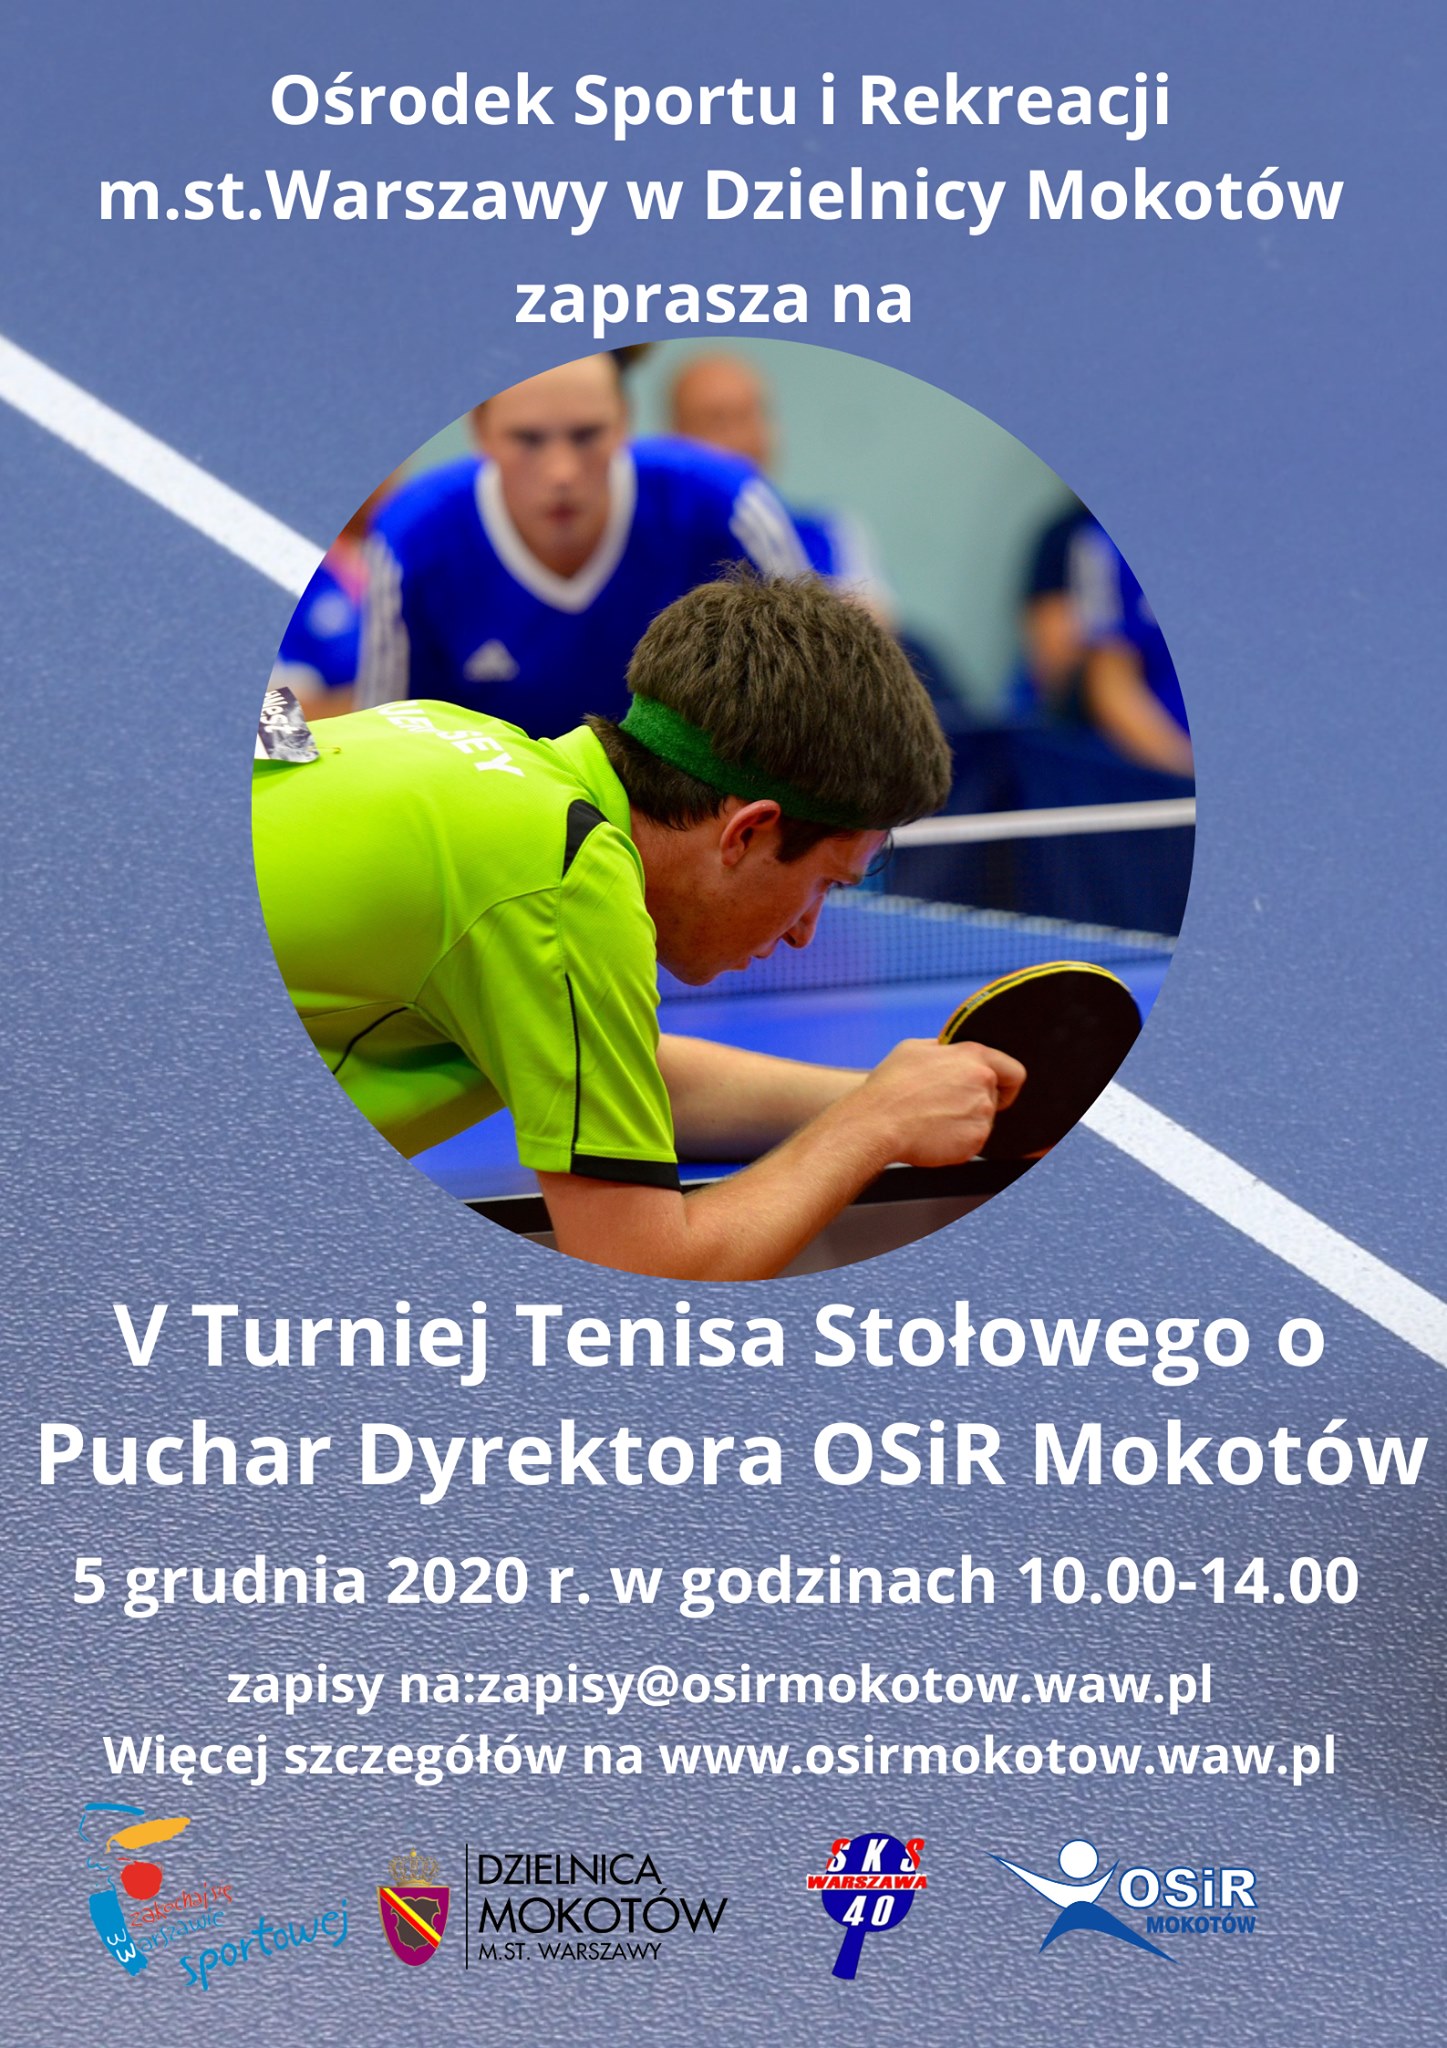 Plakat turnieju V Otwarty Turniej Tenisa Stołowego o Puchar OSiR Mokotów